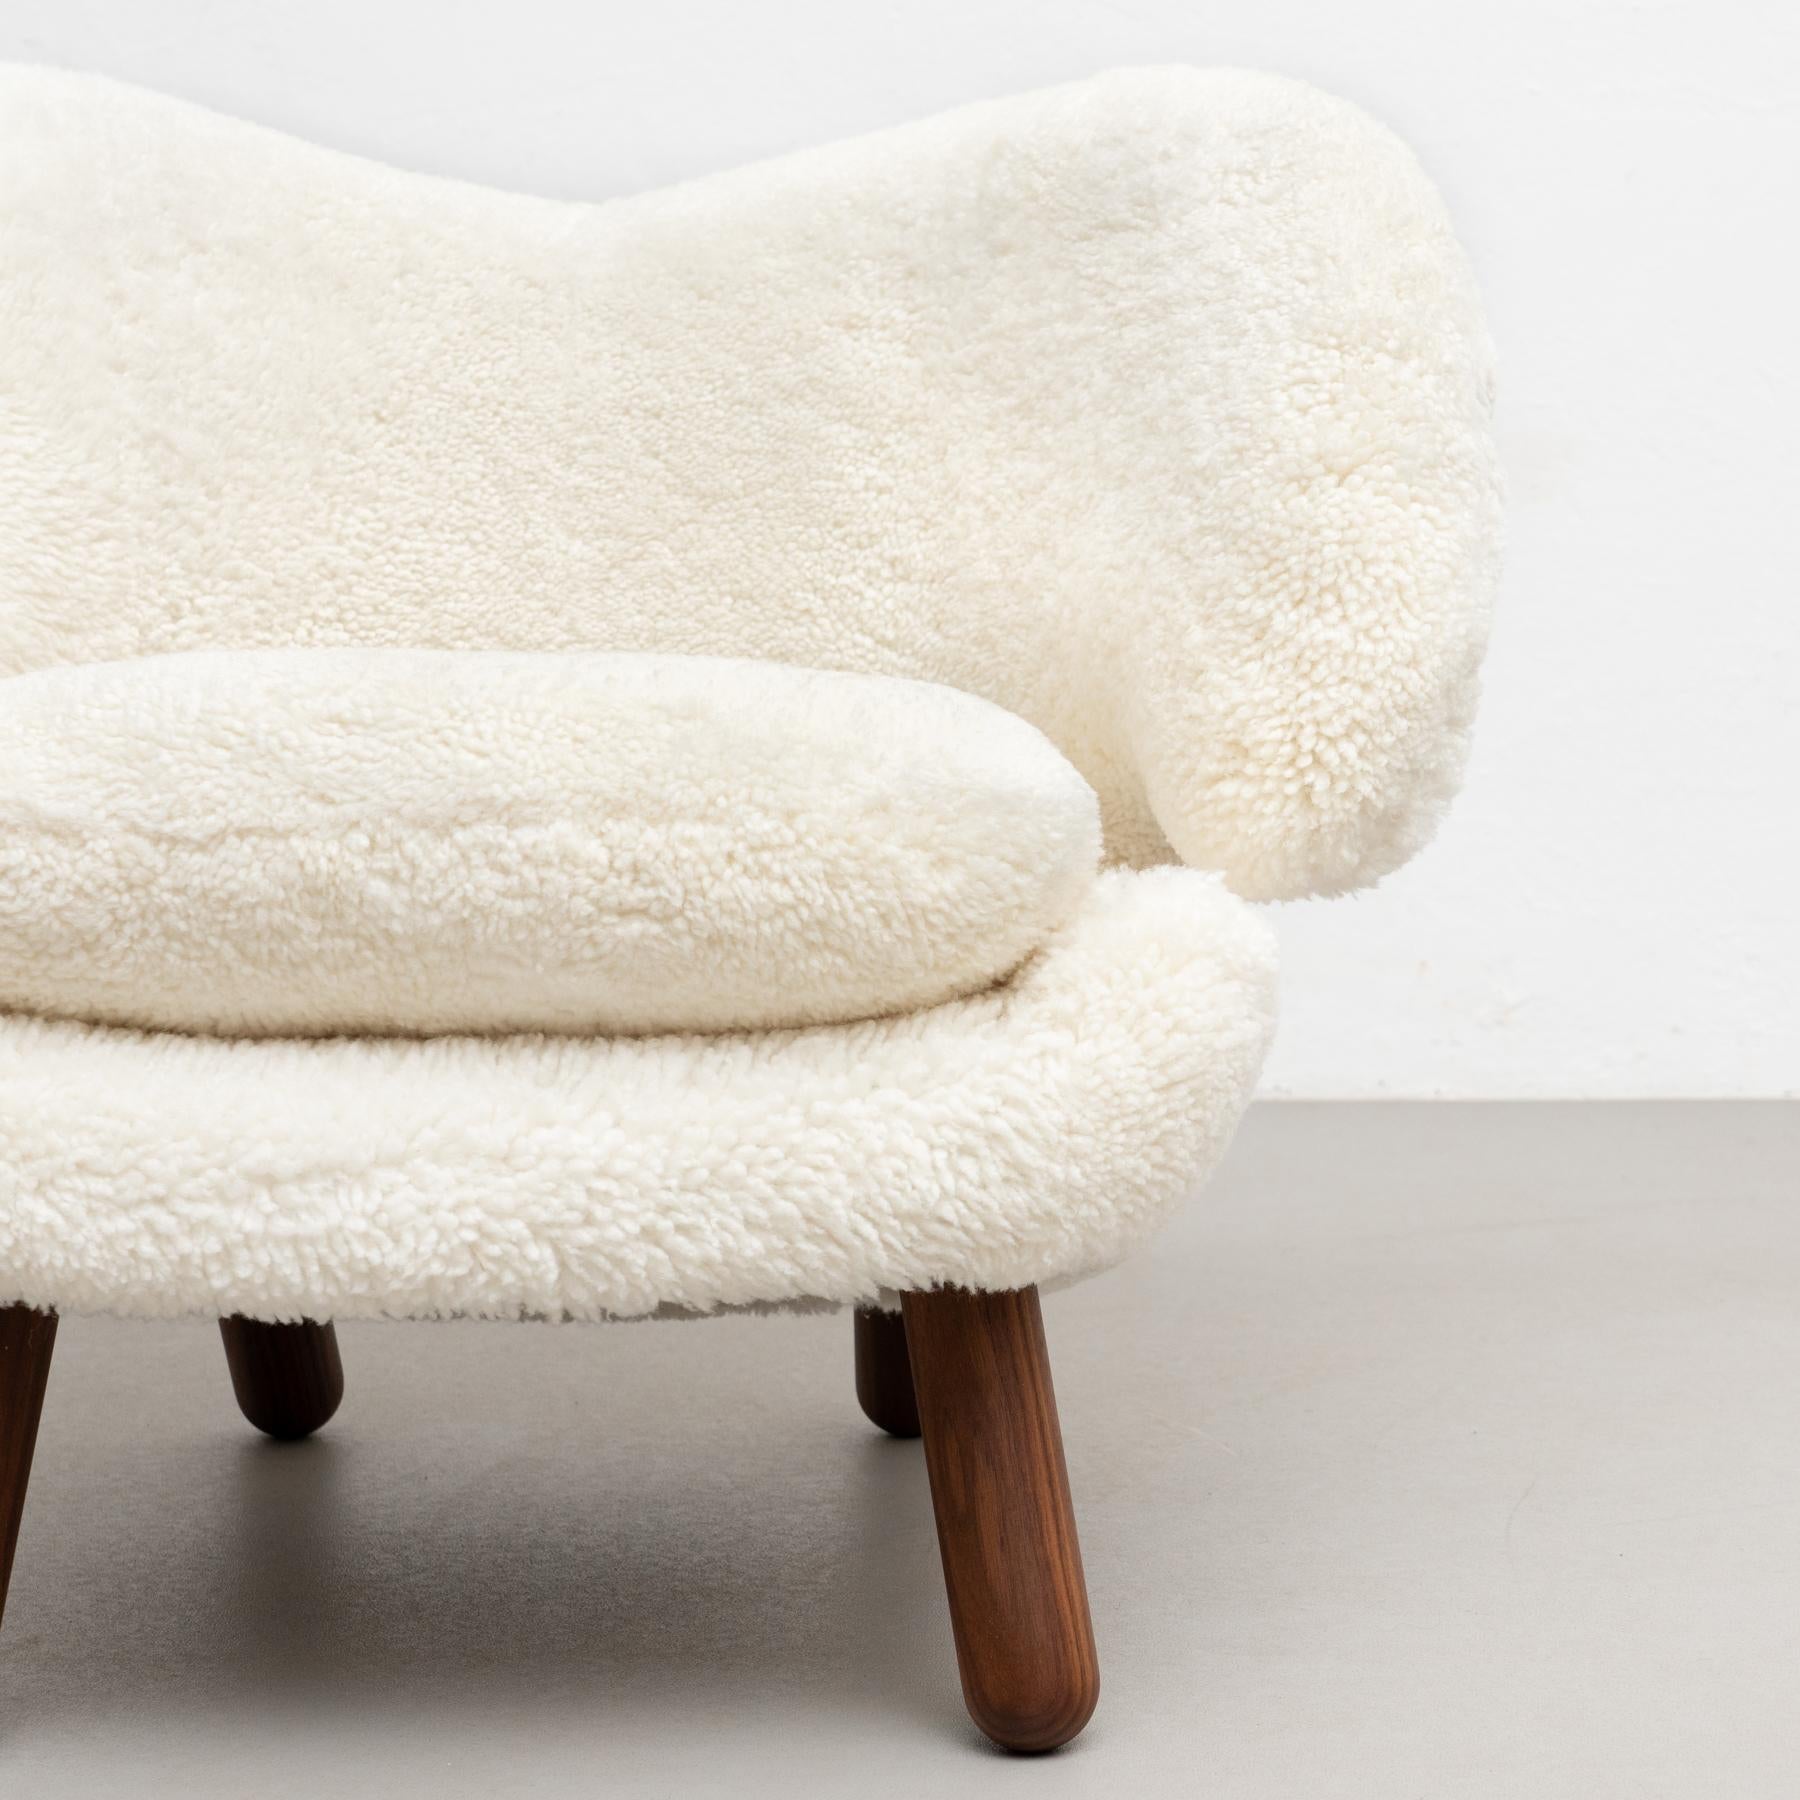 Finn Juhl Pelican Chair Upholstered in Offwhite Sheepskin For Sale 2